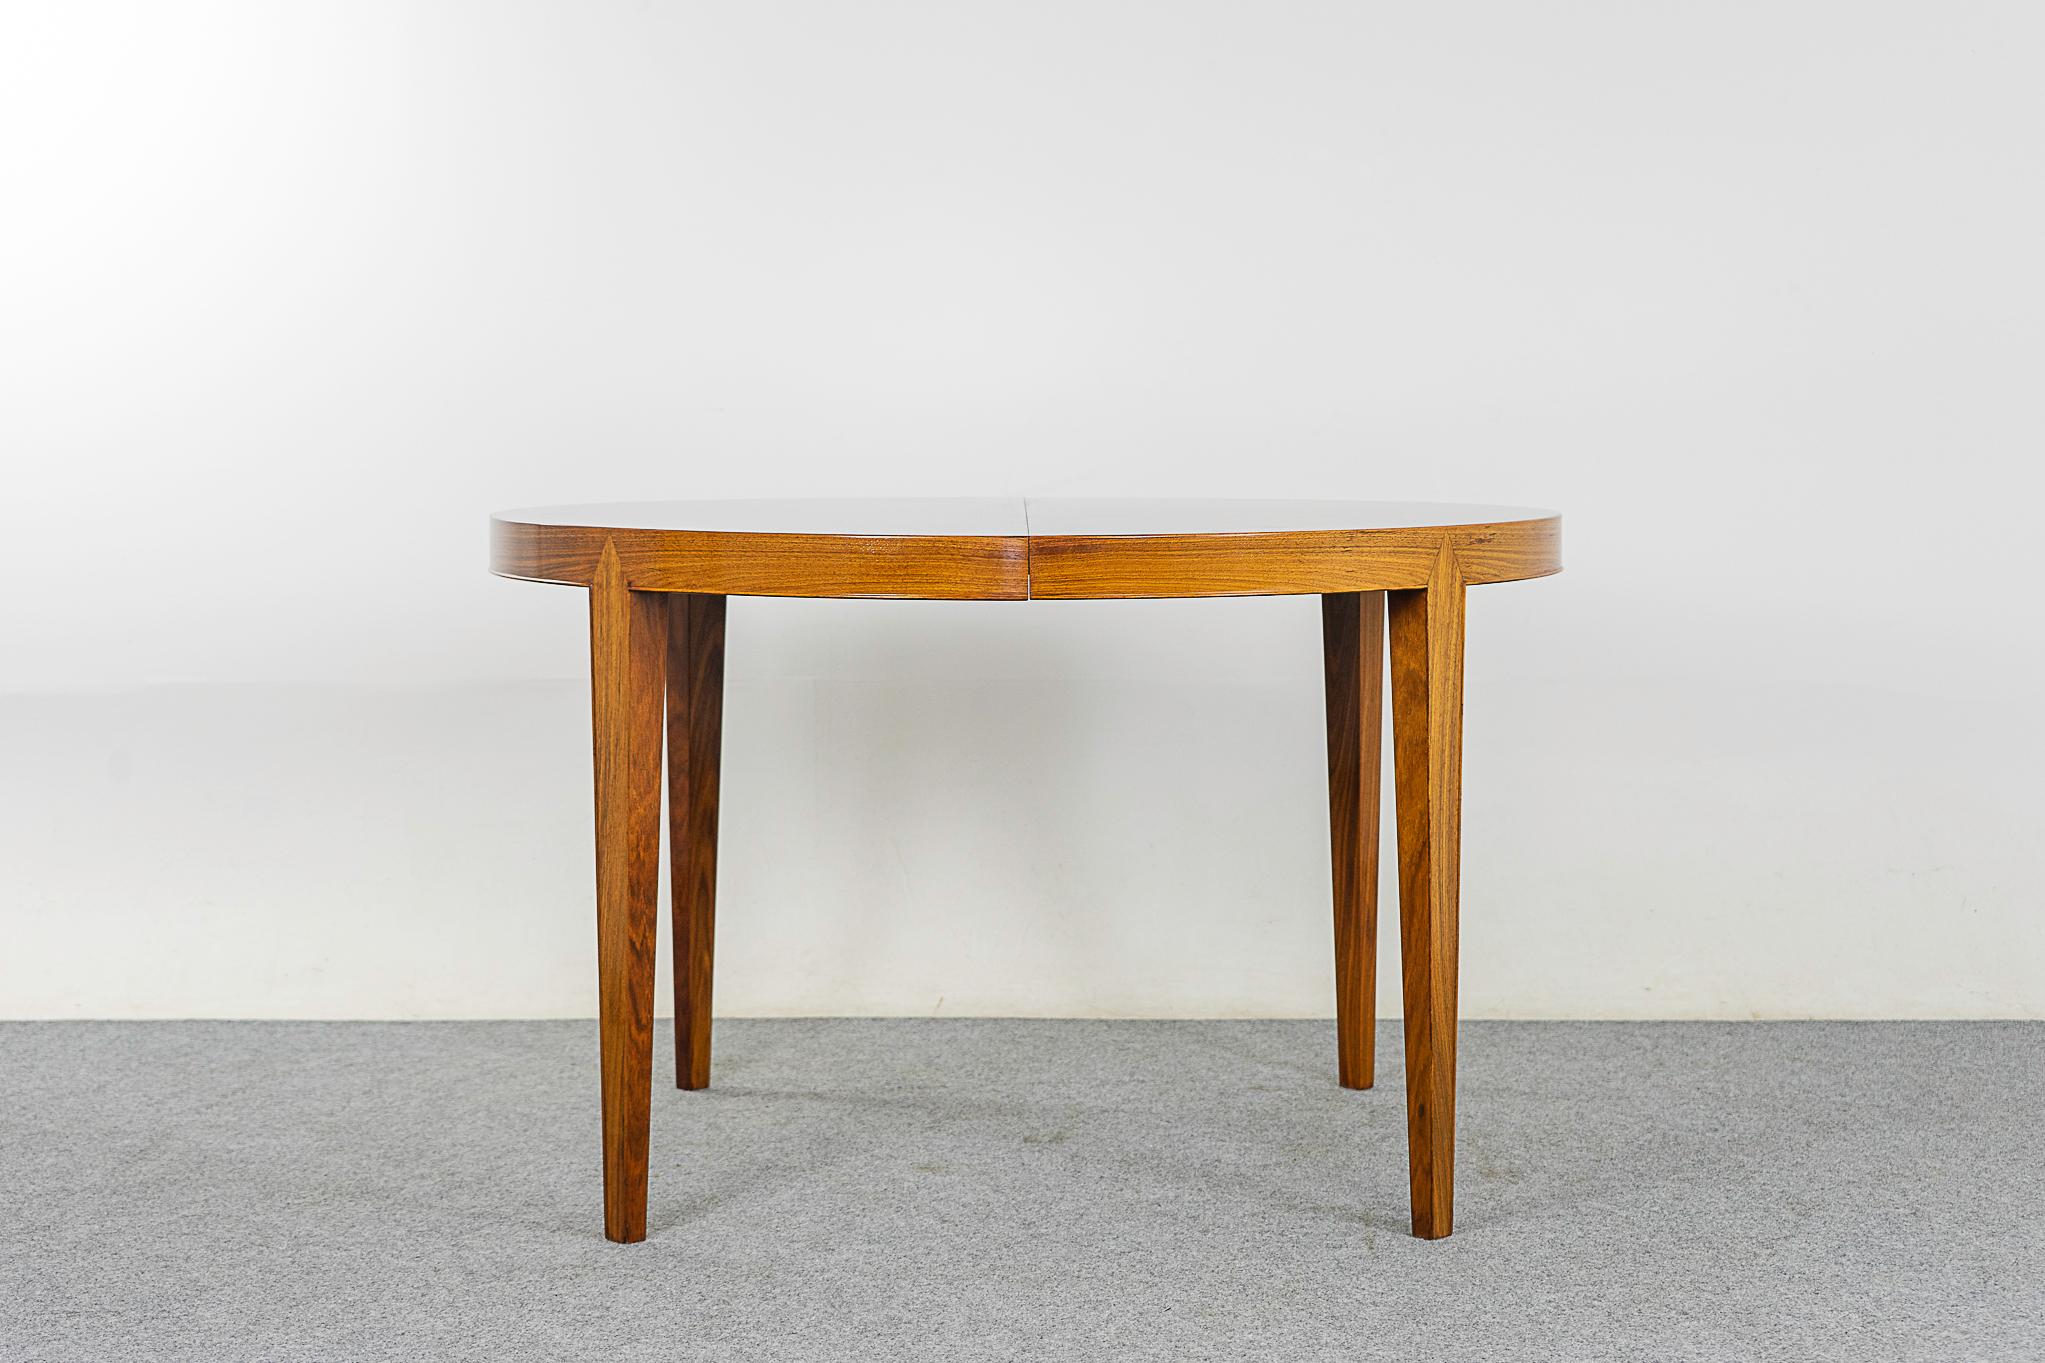 Table de salle à manger danoise en bois de rose par Haslev, vers les années 1960. Design circulaire extensible, la table parfaite pour les espaces de vie modernes et compacts. Utilisez une ou plusieurs feuilles en fonction de vos besoins. Le pied en